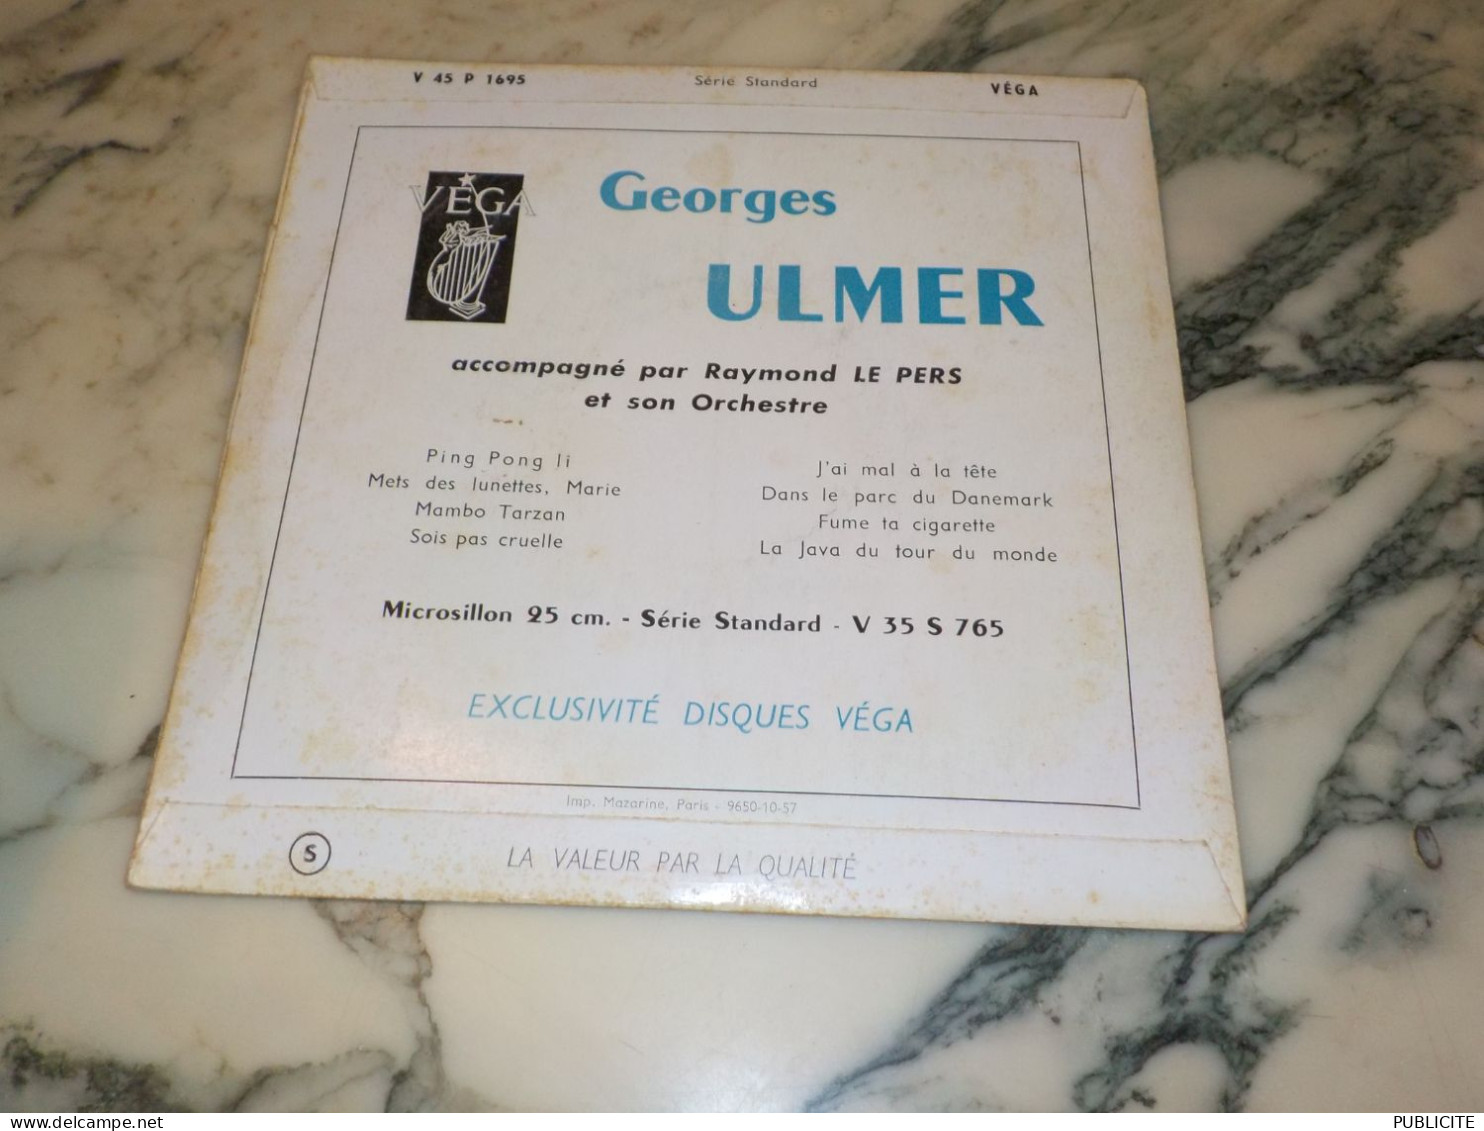 45 TOURS DANS LE PARC DU DANEMARK GEORGE ULMER 1956 - Humour, Cabaret